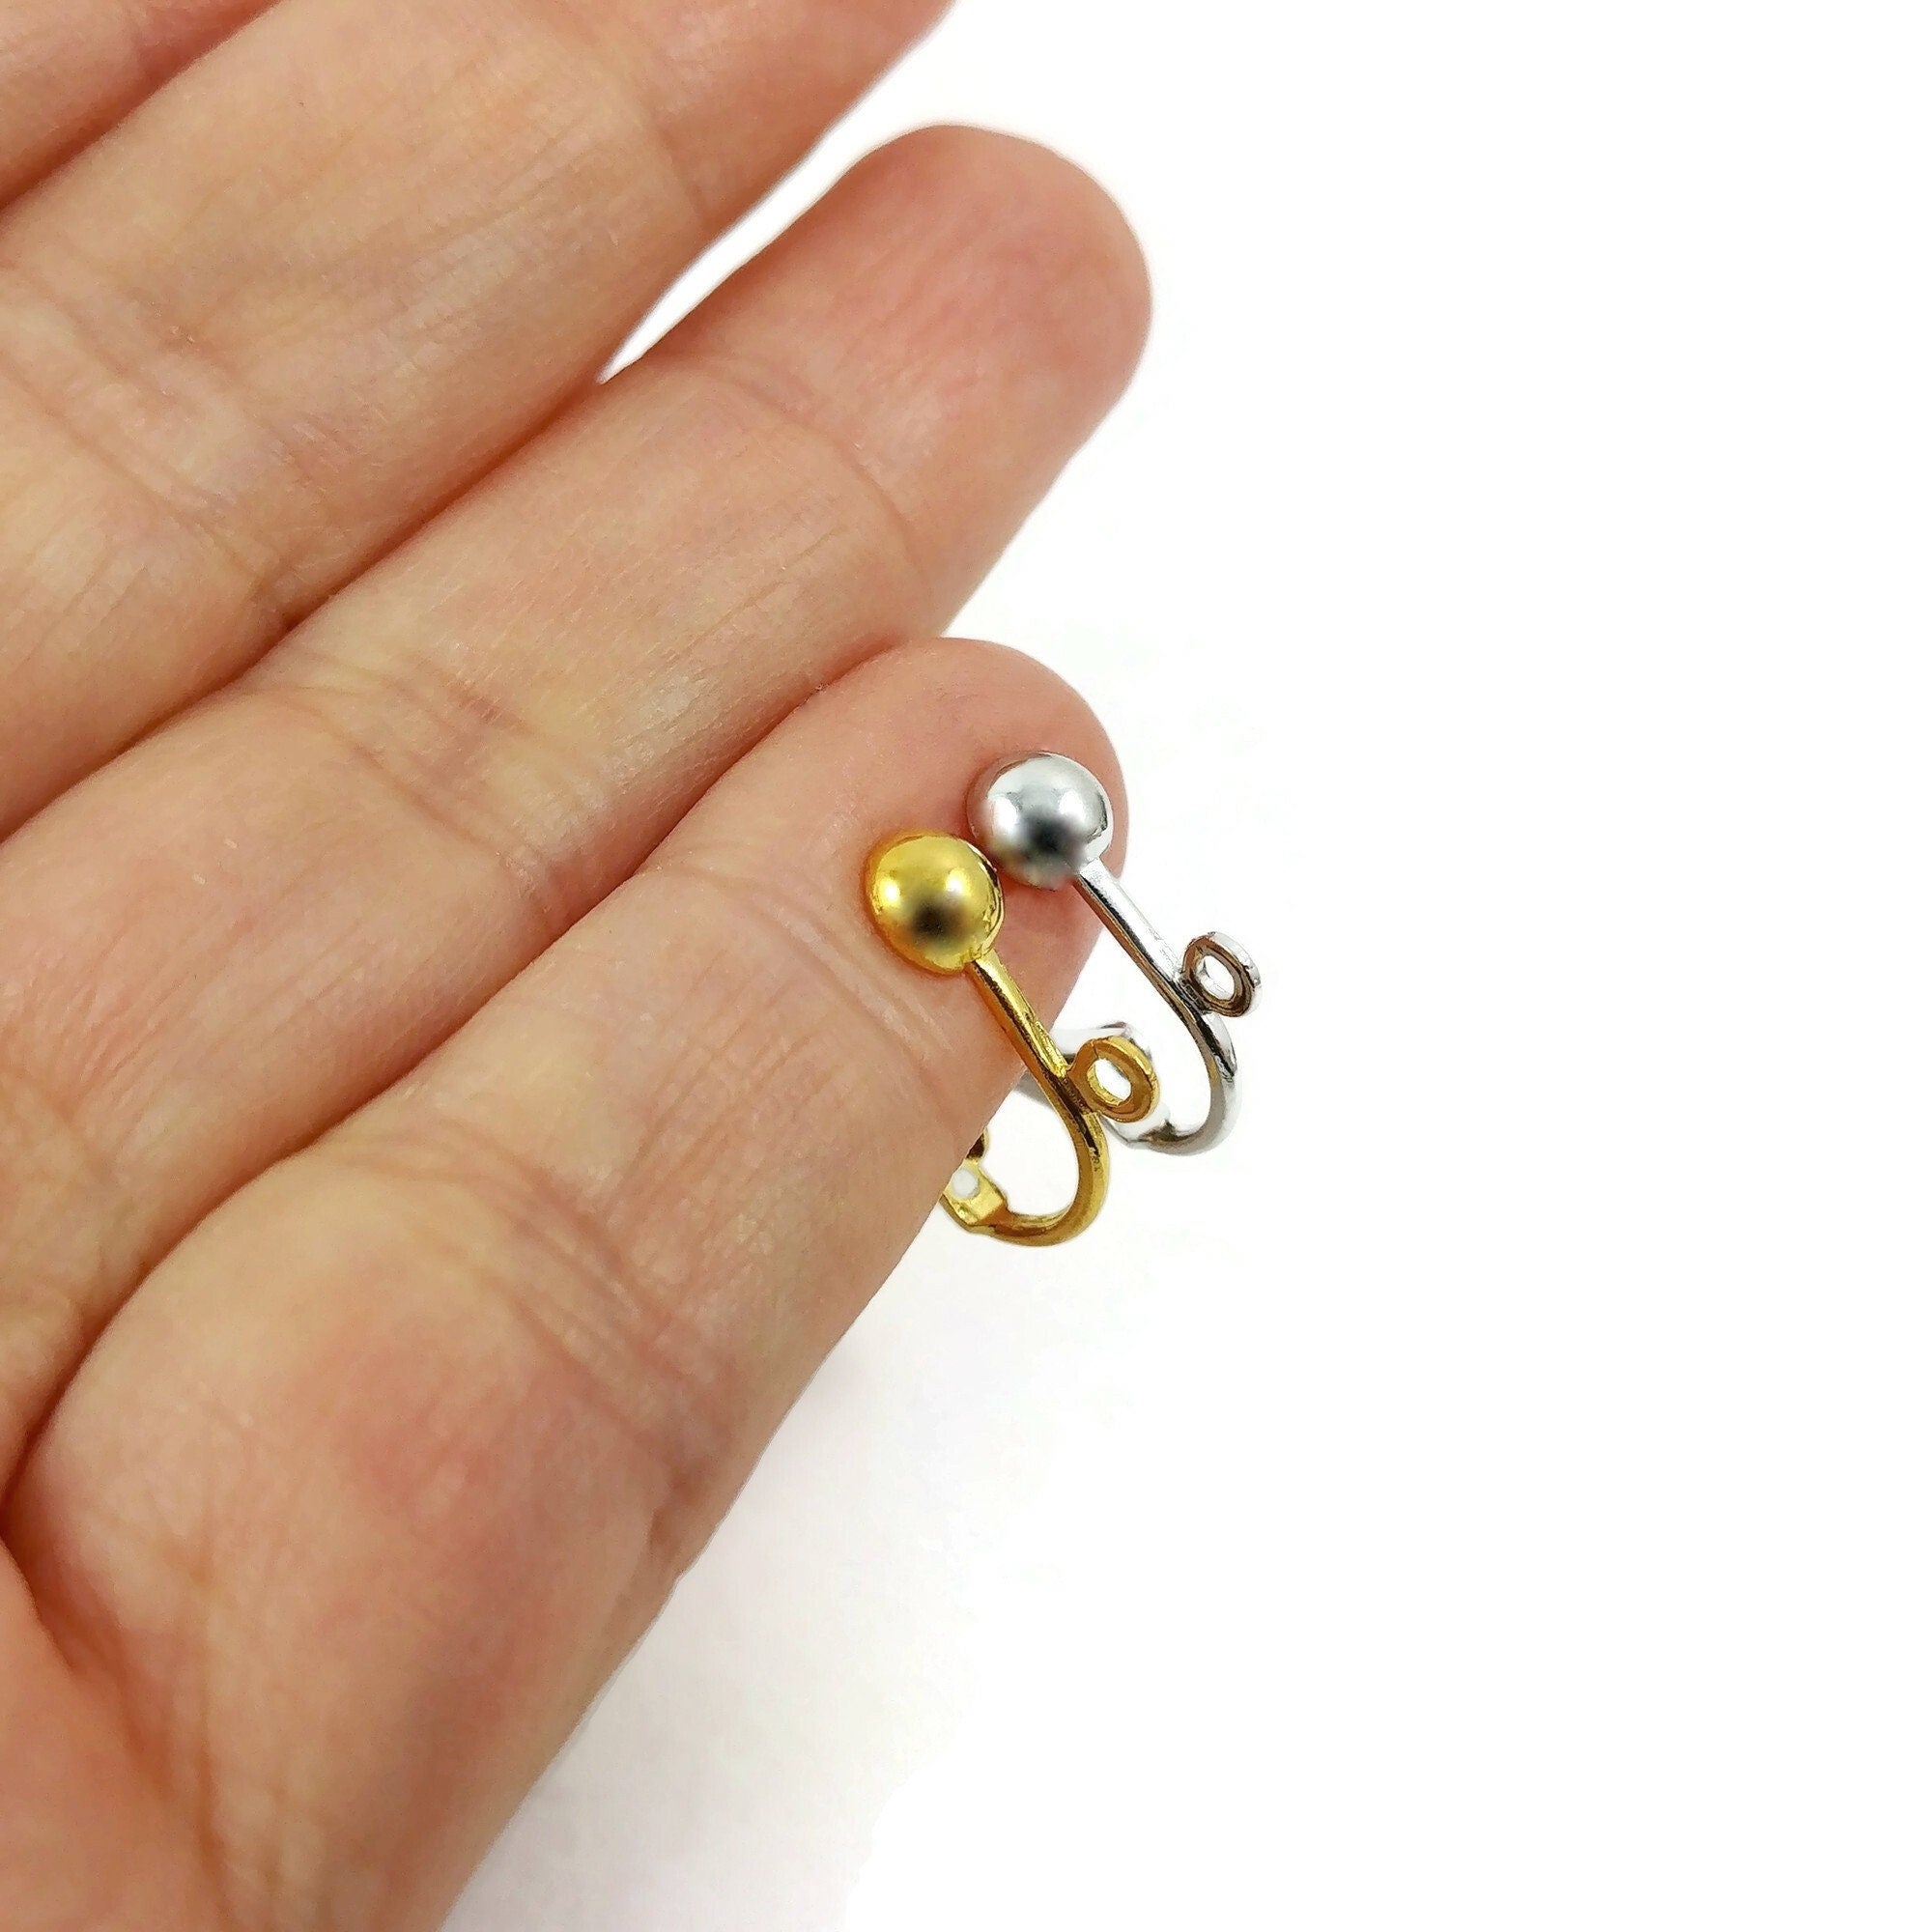 Stainless steel huggie hoops with loop, Gold, Silver, Earring findings